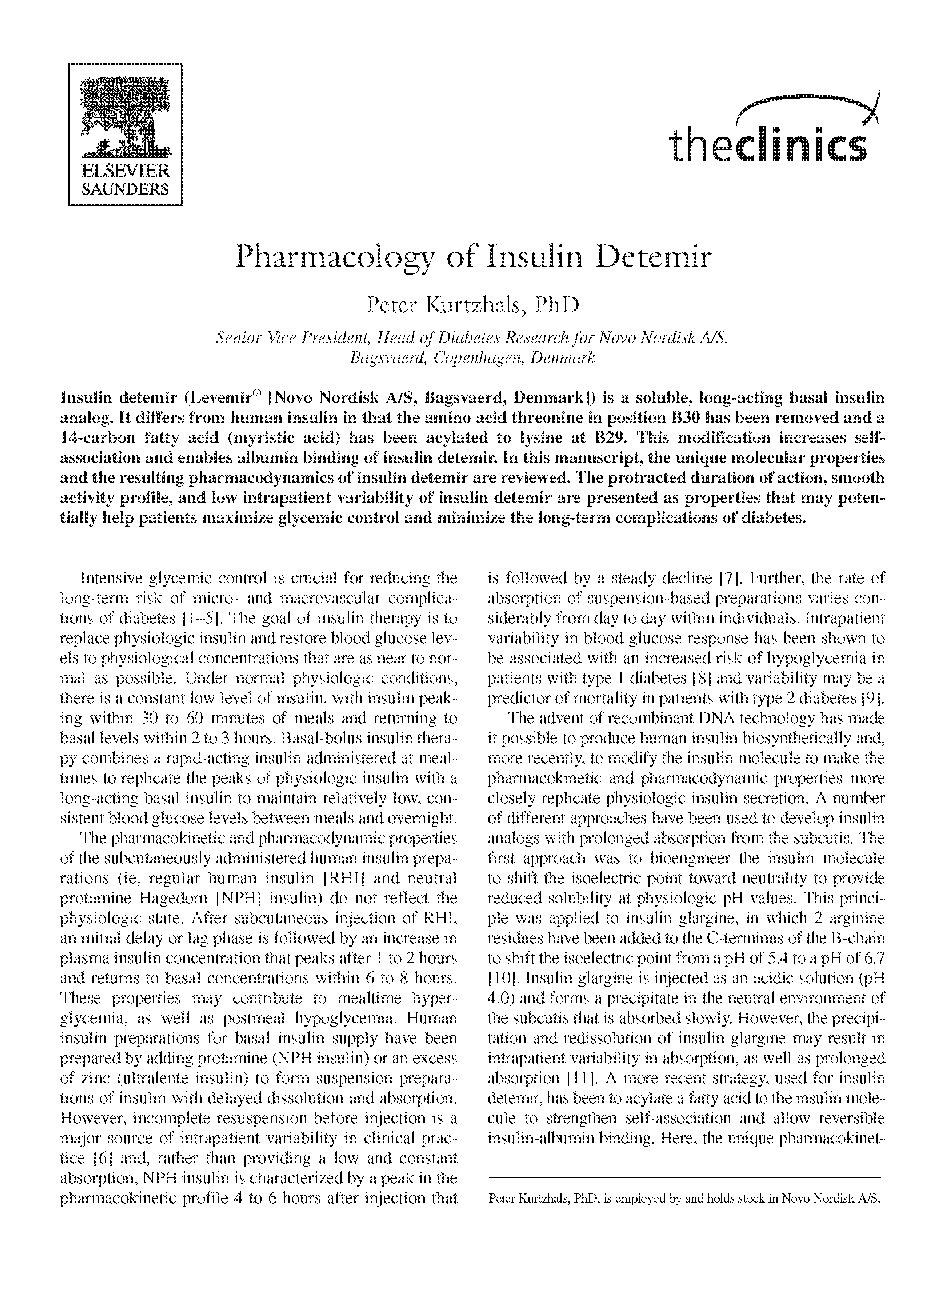 Pharmacology of Insulin Detemir